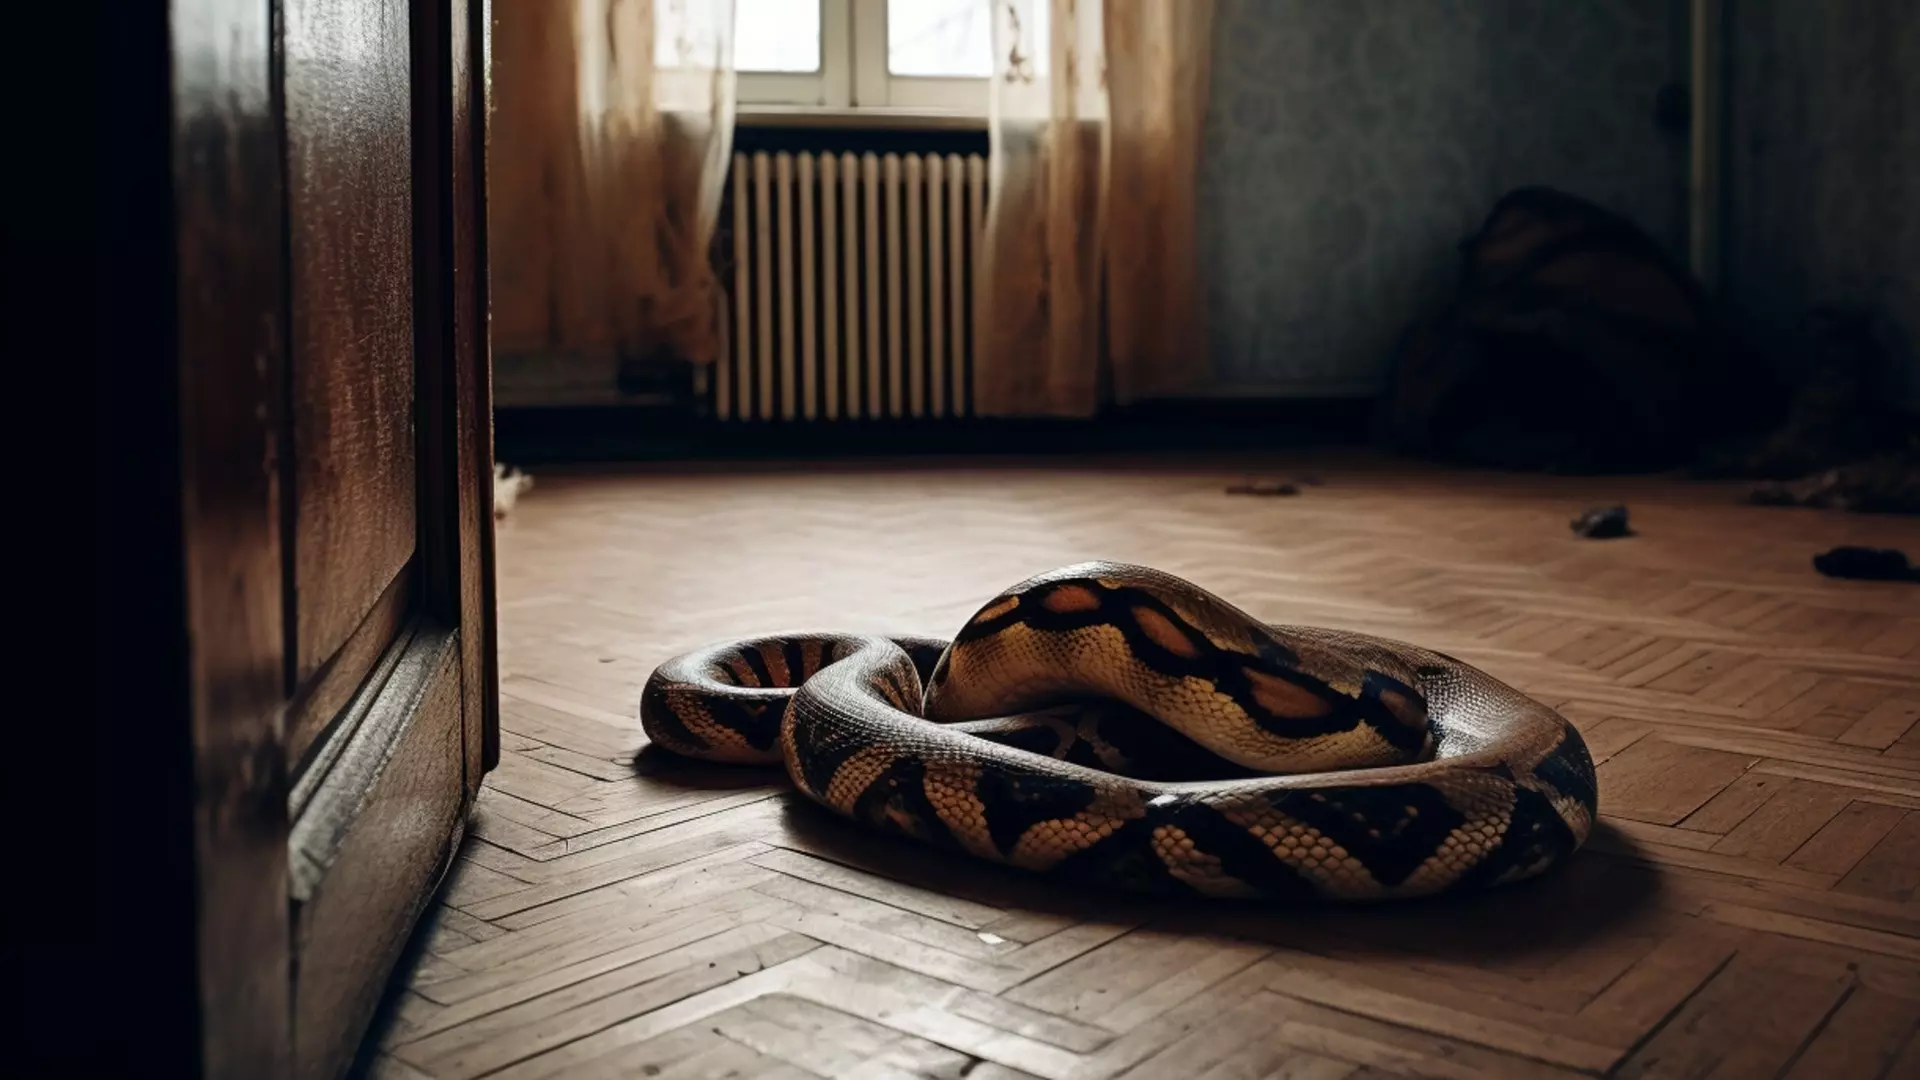 Змея заползла в детский сад Крымского района Кубани